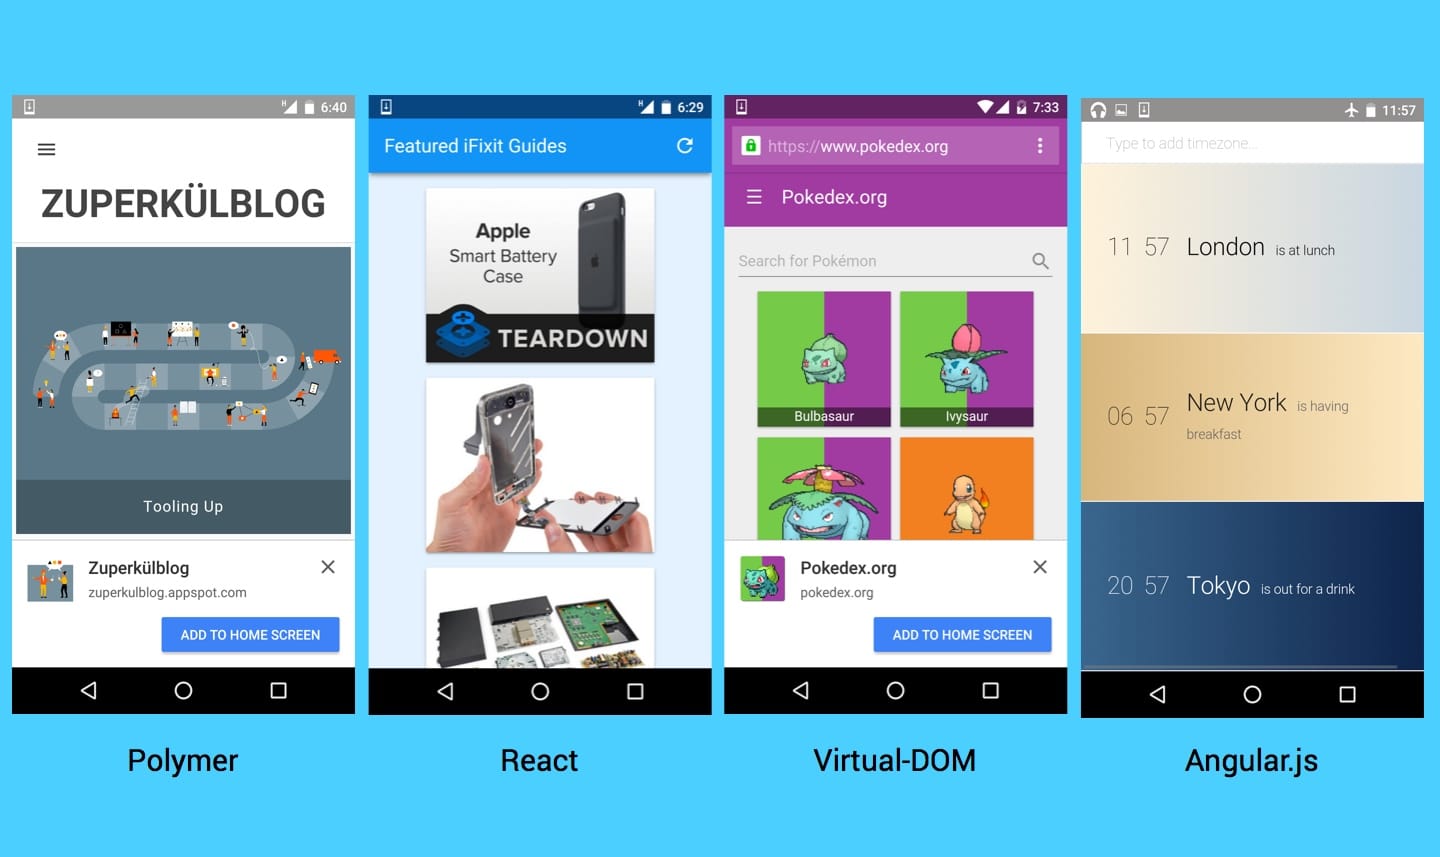 אפליקציות מסוג Progressive Web App שהוטמעו באמצעות React, Polymer, Virtual DOM ו-AgularJS